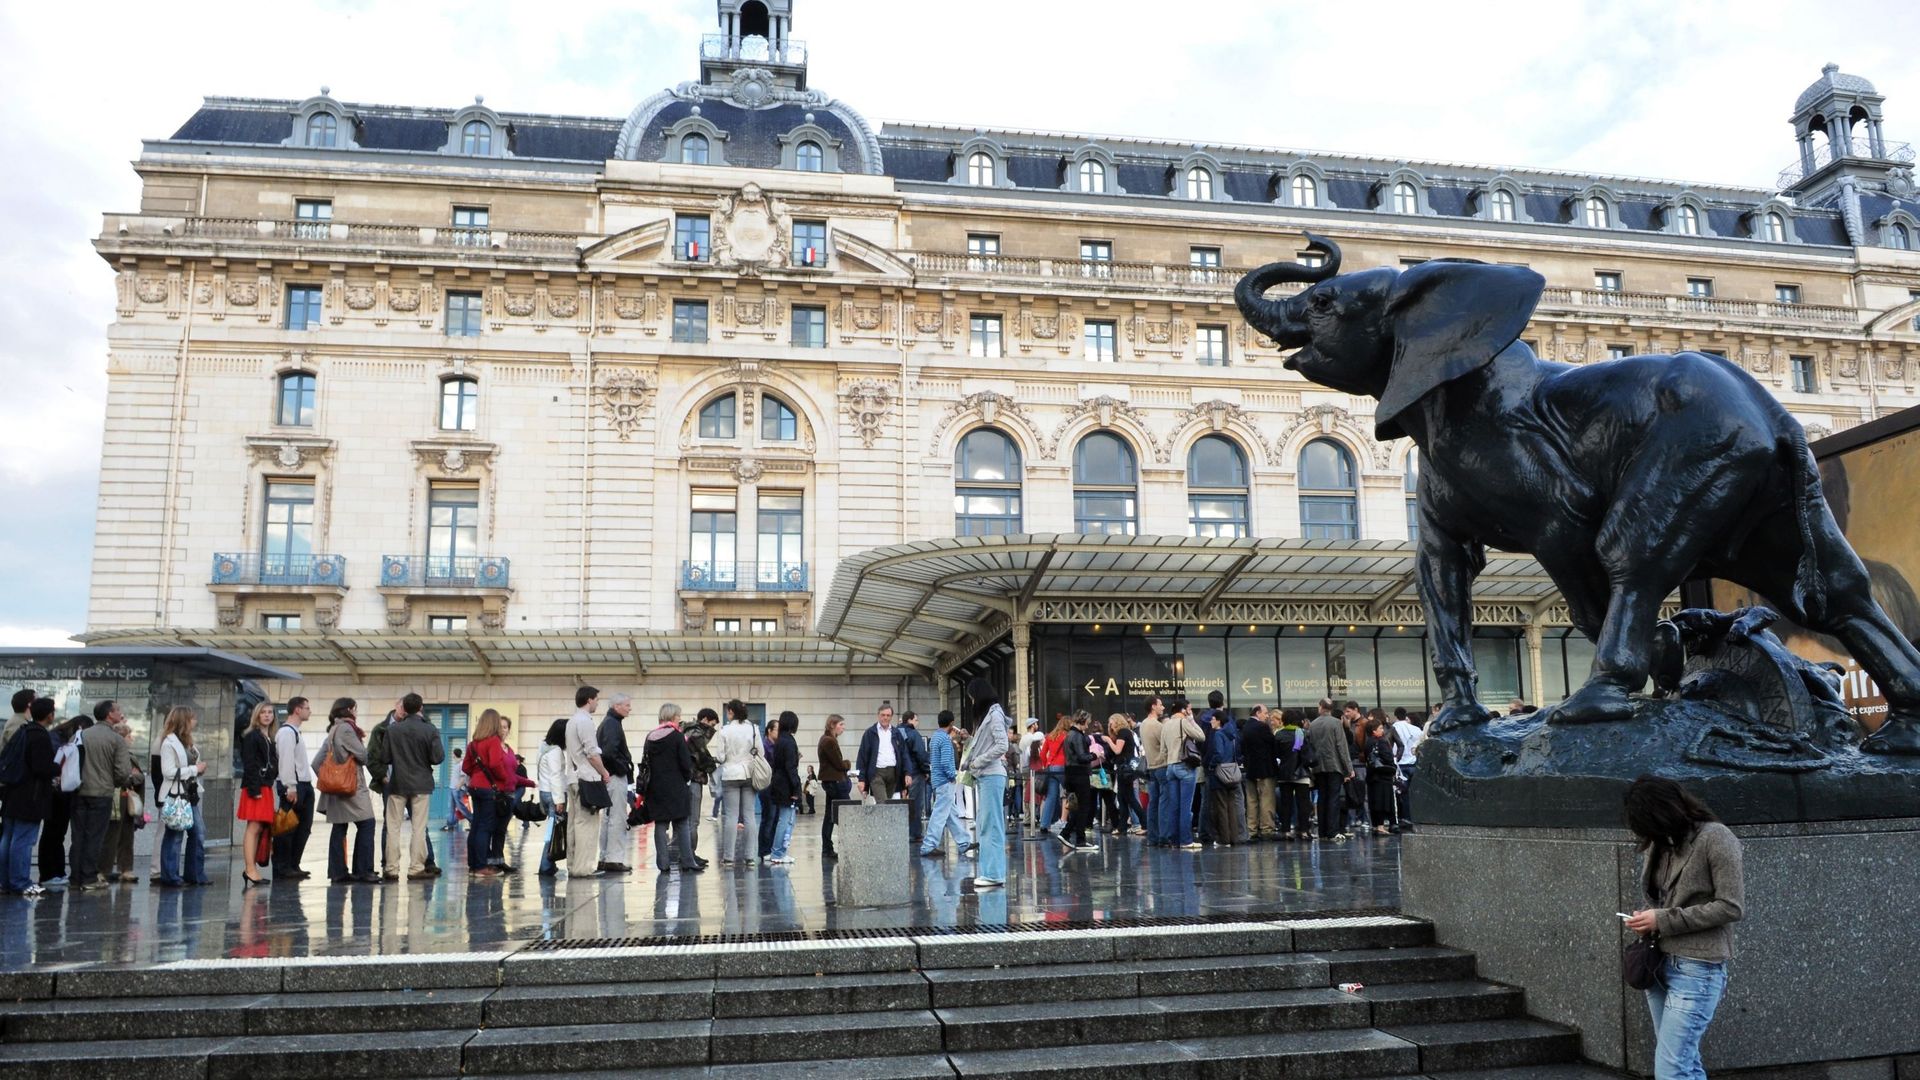 Le musée d'Orsay, le musée préféré des voyageursLe musée d'Orsay, le musée préféré des voyageurs